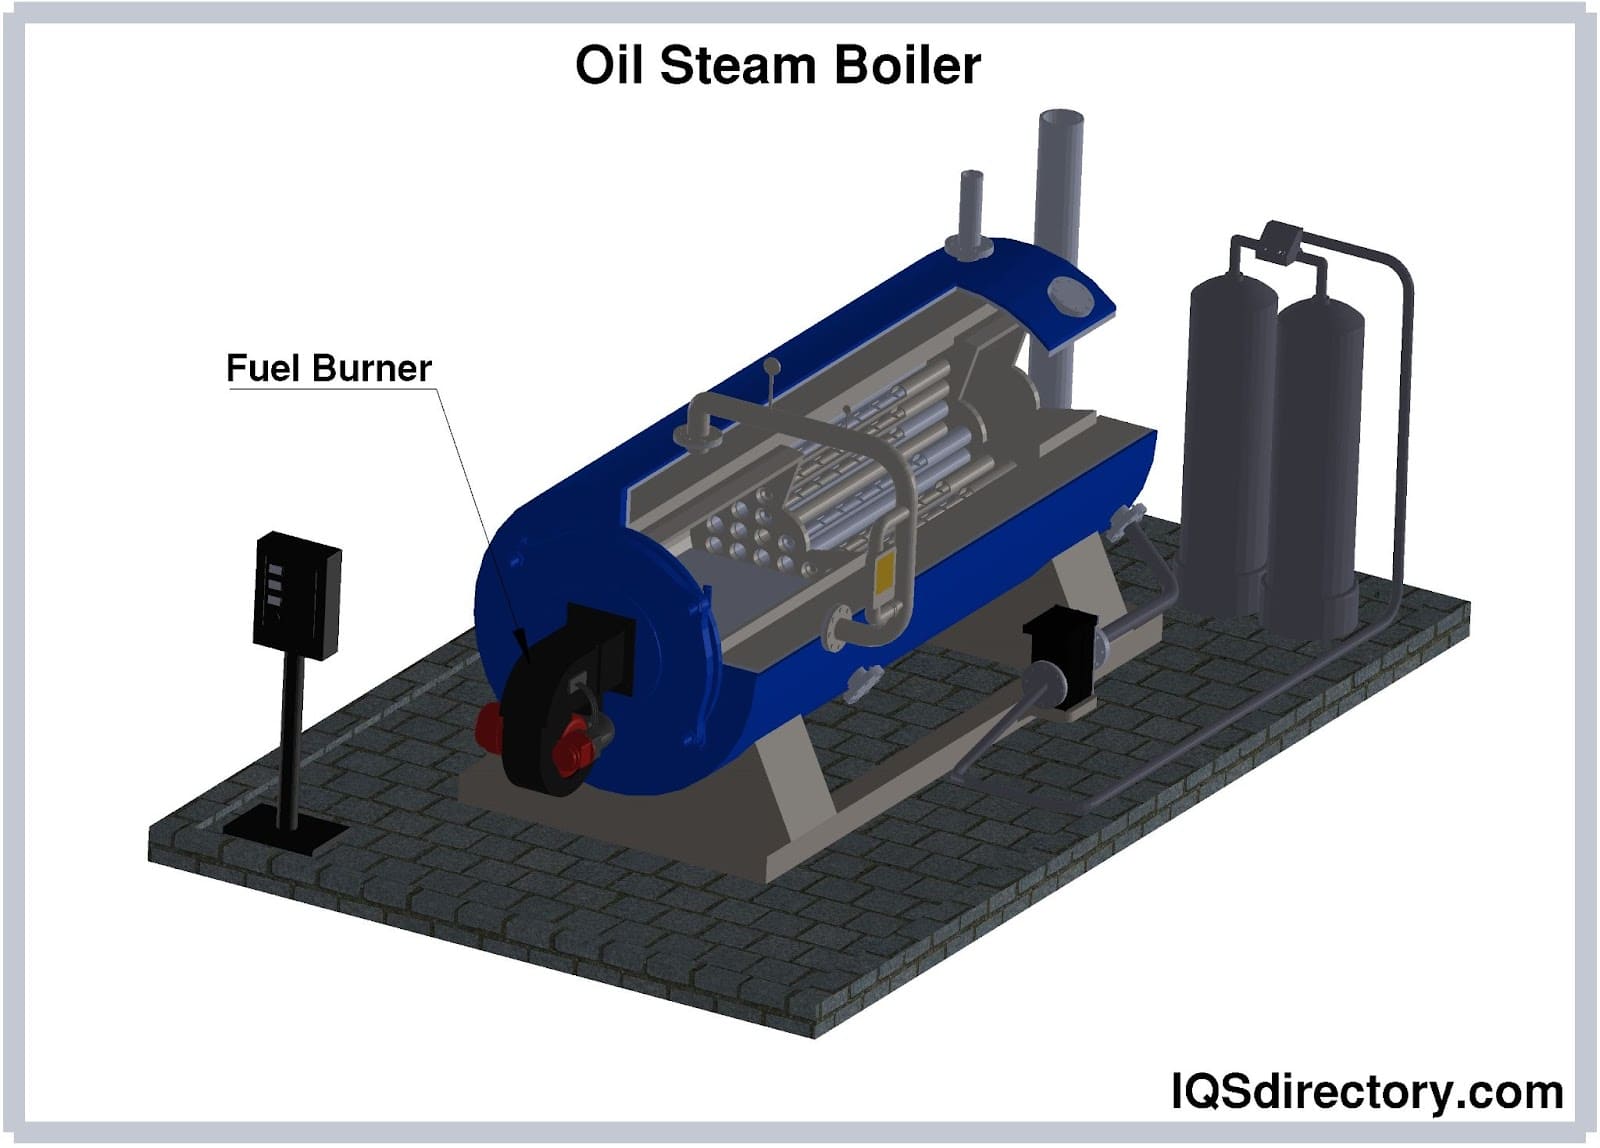 Oil Steam Boiler